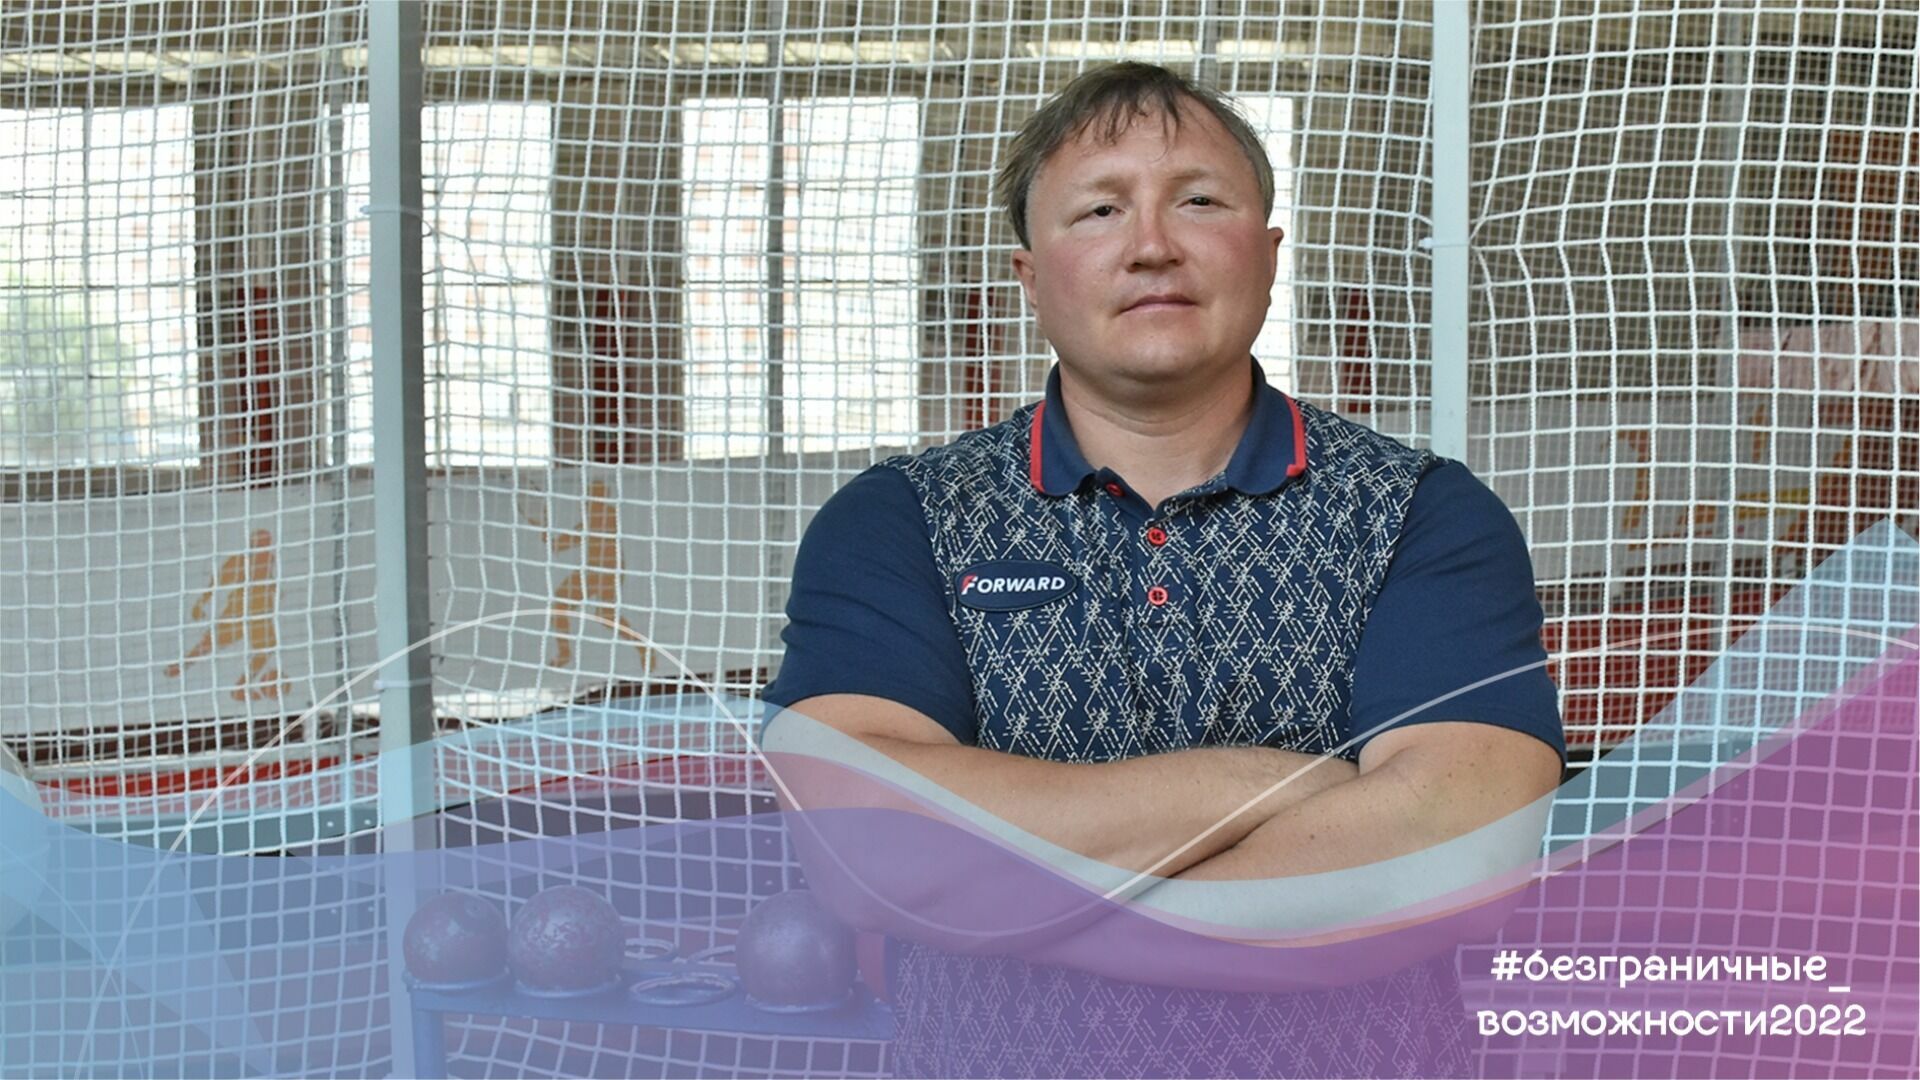 Слабовидящий чемпион из Ставрополя Игорь Баскаков бросает вызов инвалидности